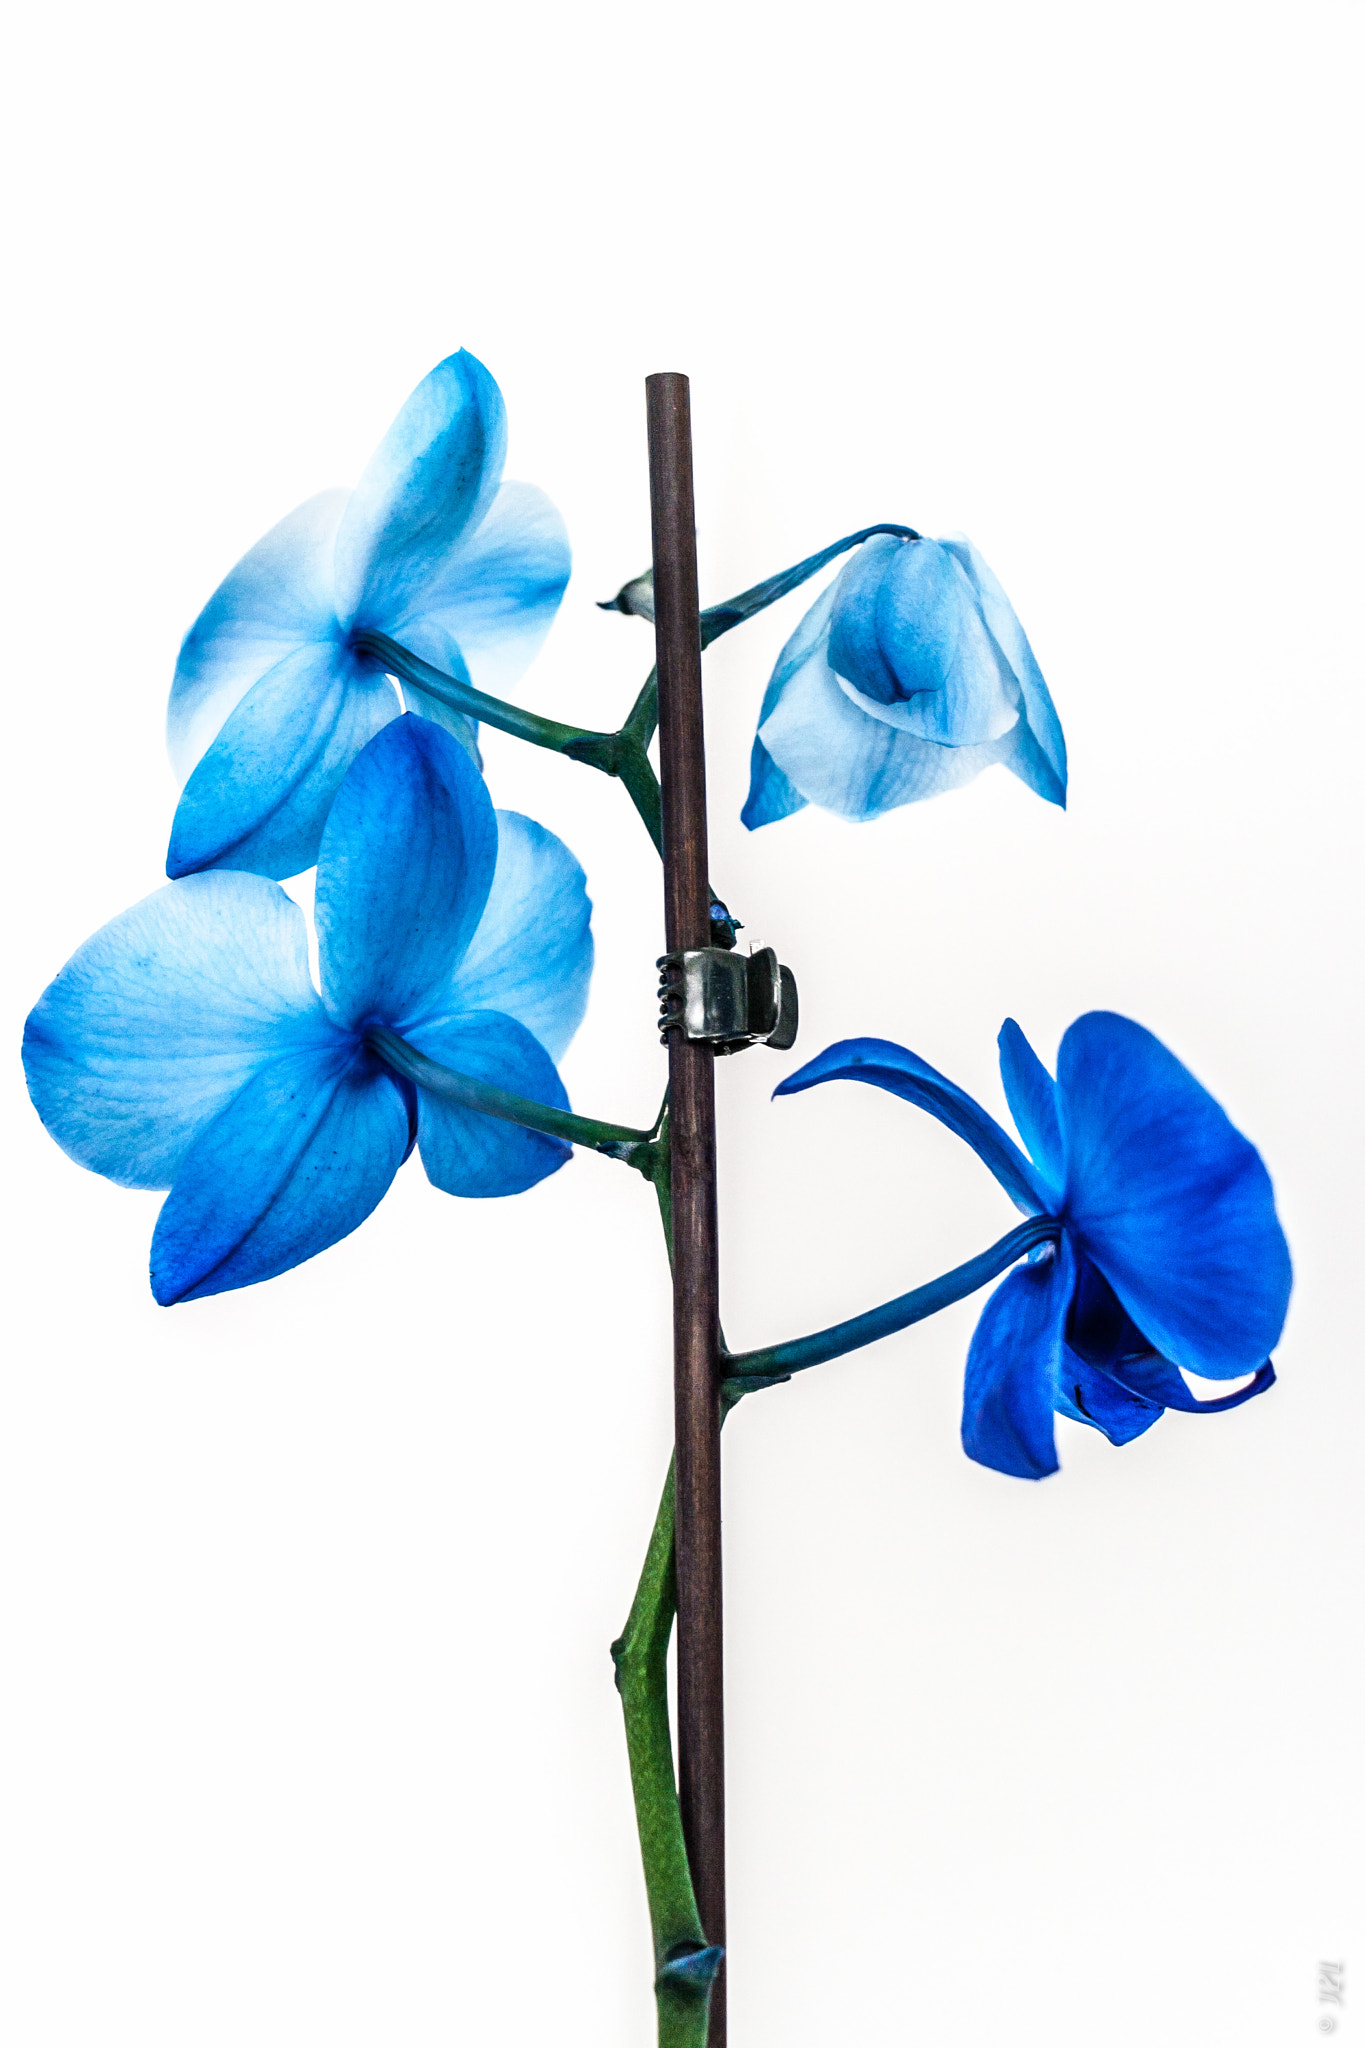 Canon EOS 400D (EOS Digital Rebel XTi / EOS Kiss Digital X) sample photo. Végétaux - orchidée bleue - bleu orchid photography